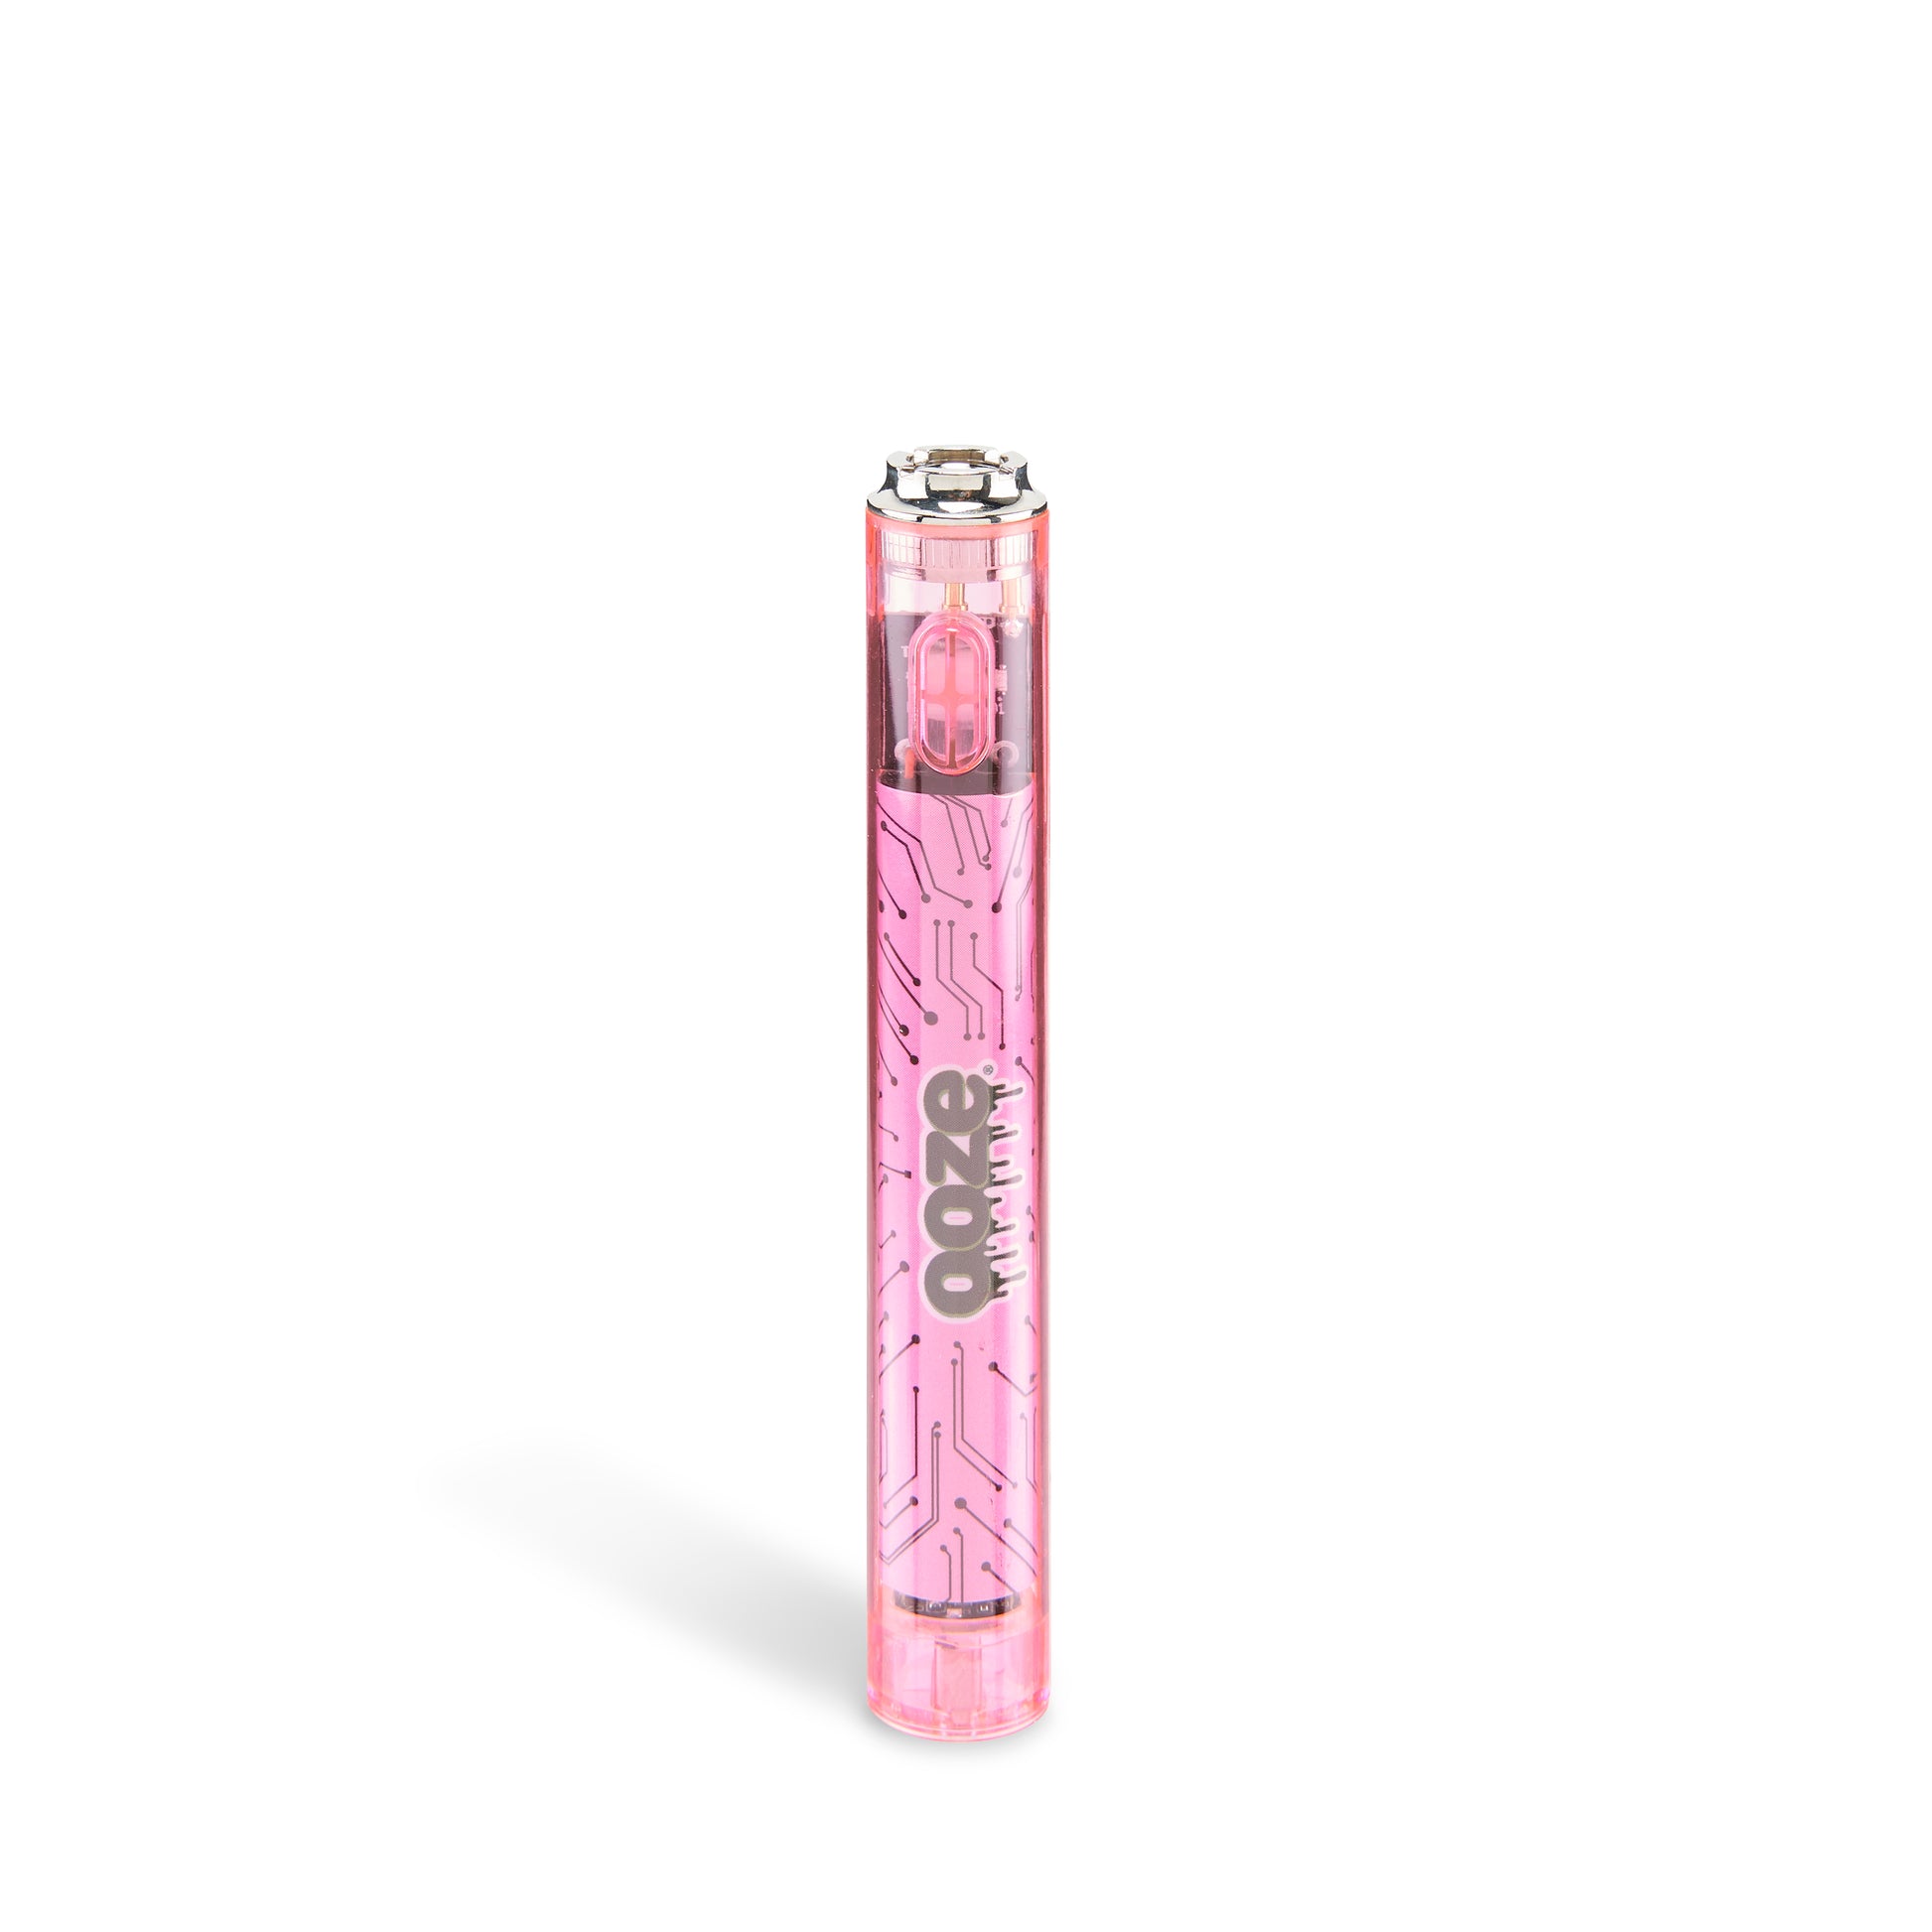 Reskyd Takt tusind Slim Clear Series Transparent 510 Vape Battery – Atomic Pink – Ooze